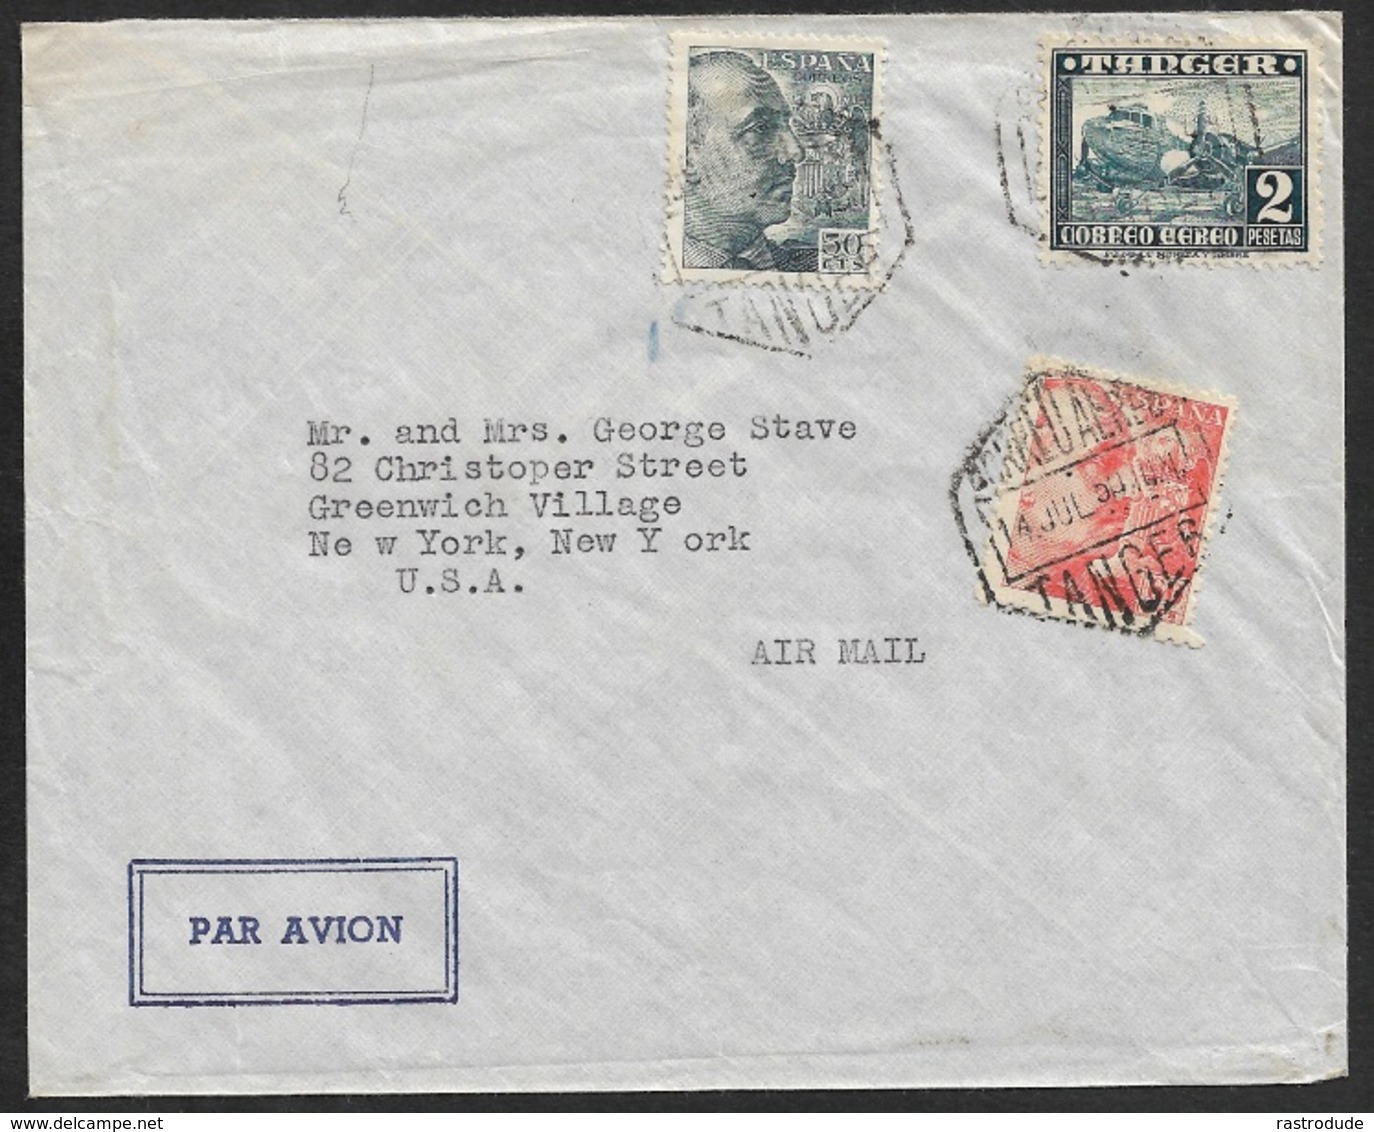 1950 - ESPAÑA / TANGER (Marruecos) - Franqueo Mixto - Correo Aereo A EE.UU - Spain P.O Tangier Mixed Franking To U.S - Covers & Documents